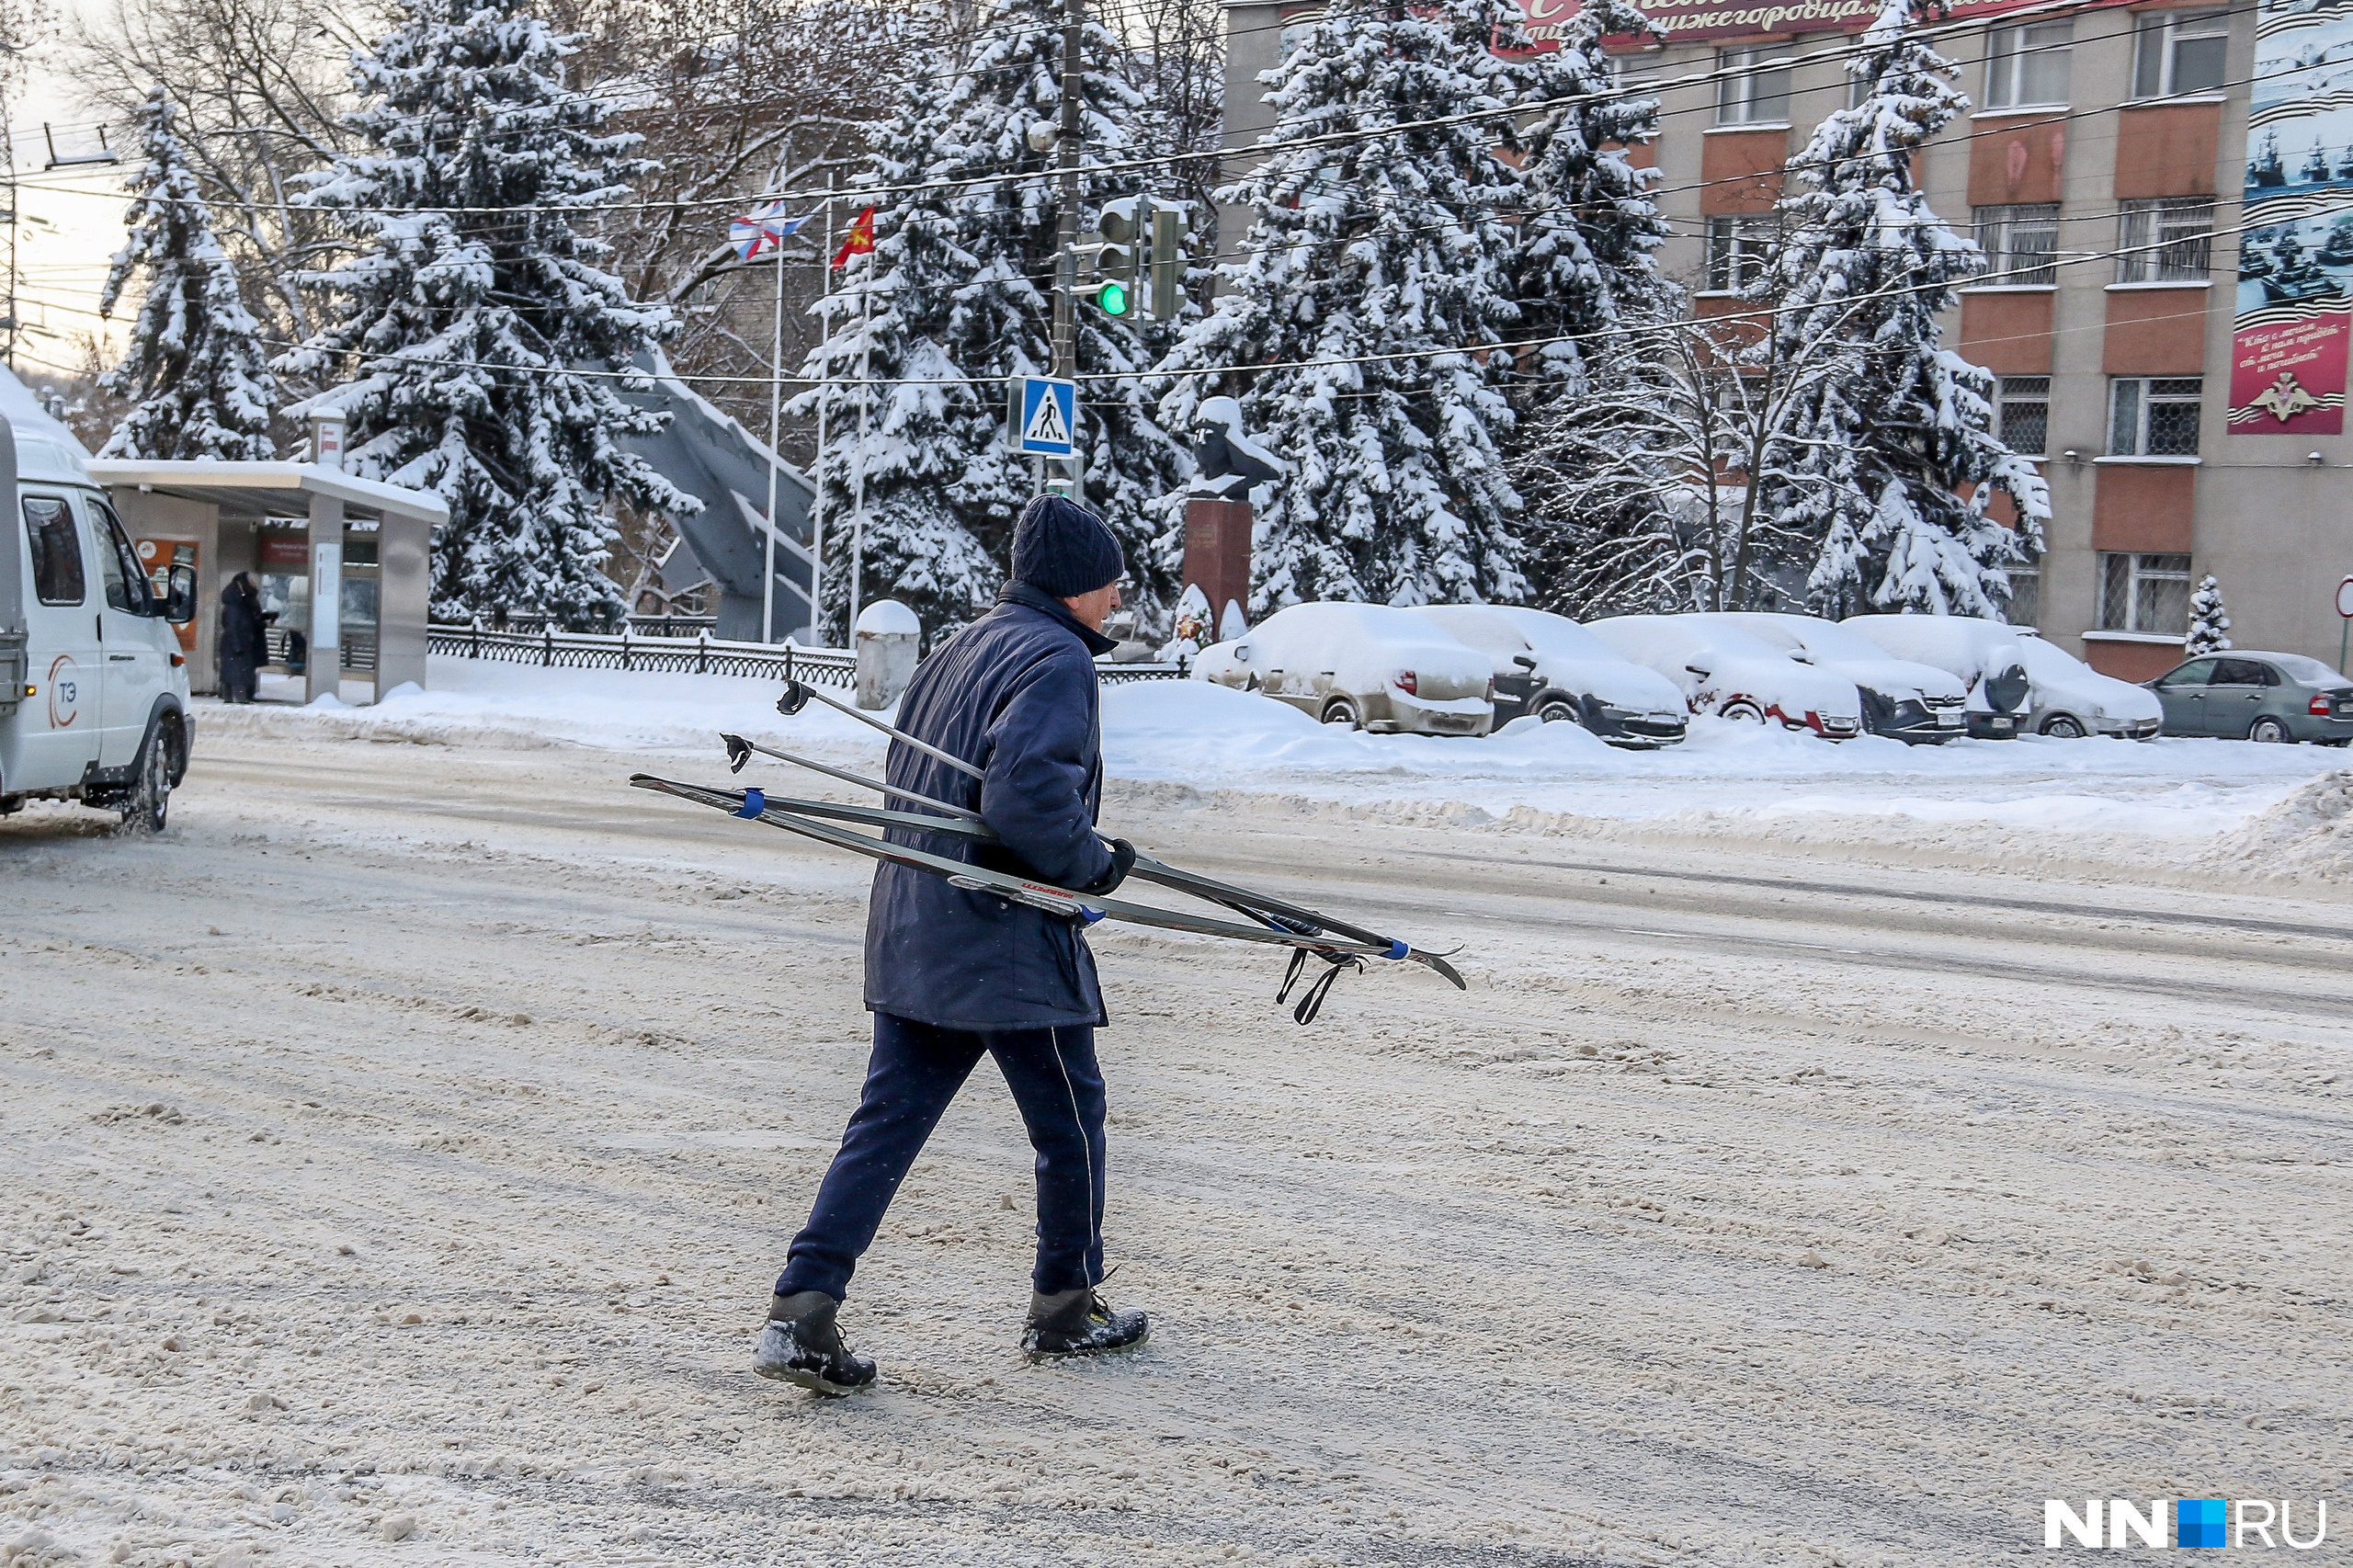 Апокалипсис сегодня: фоторепортаж с пустынных улиц Нижнего Новгорода утром 1-го января